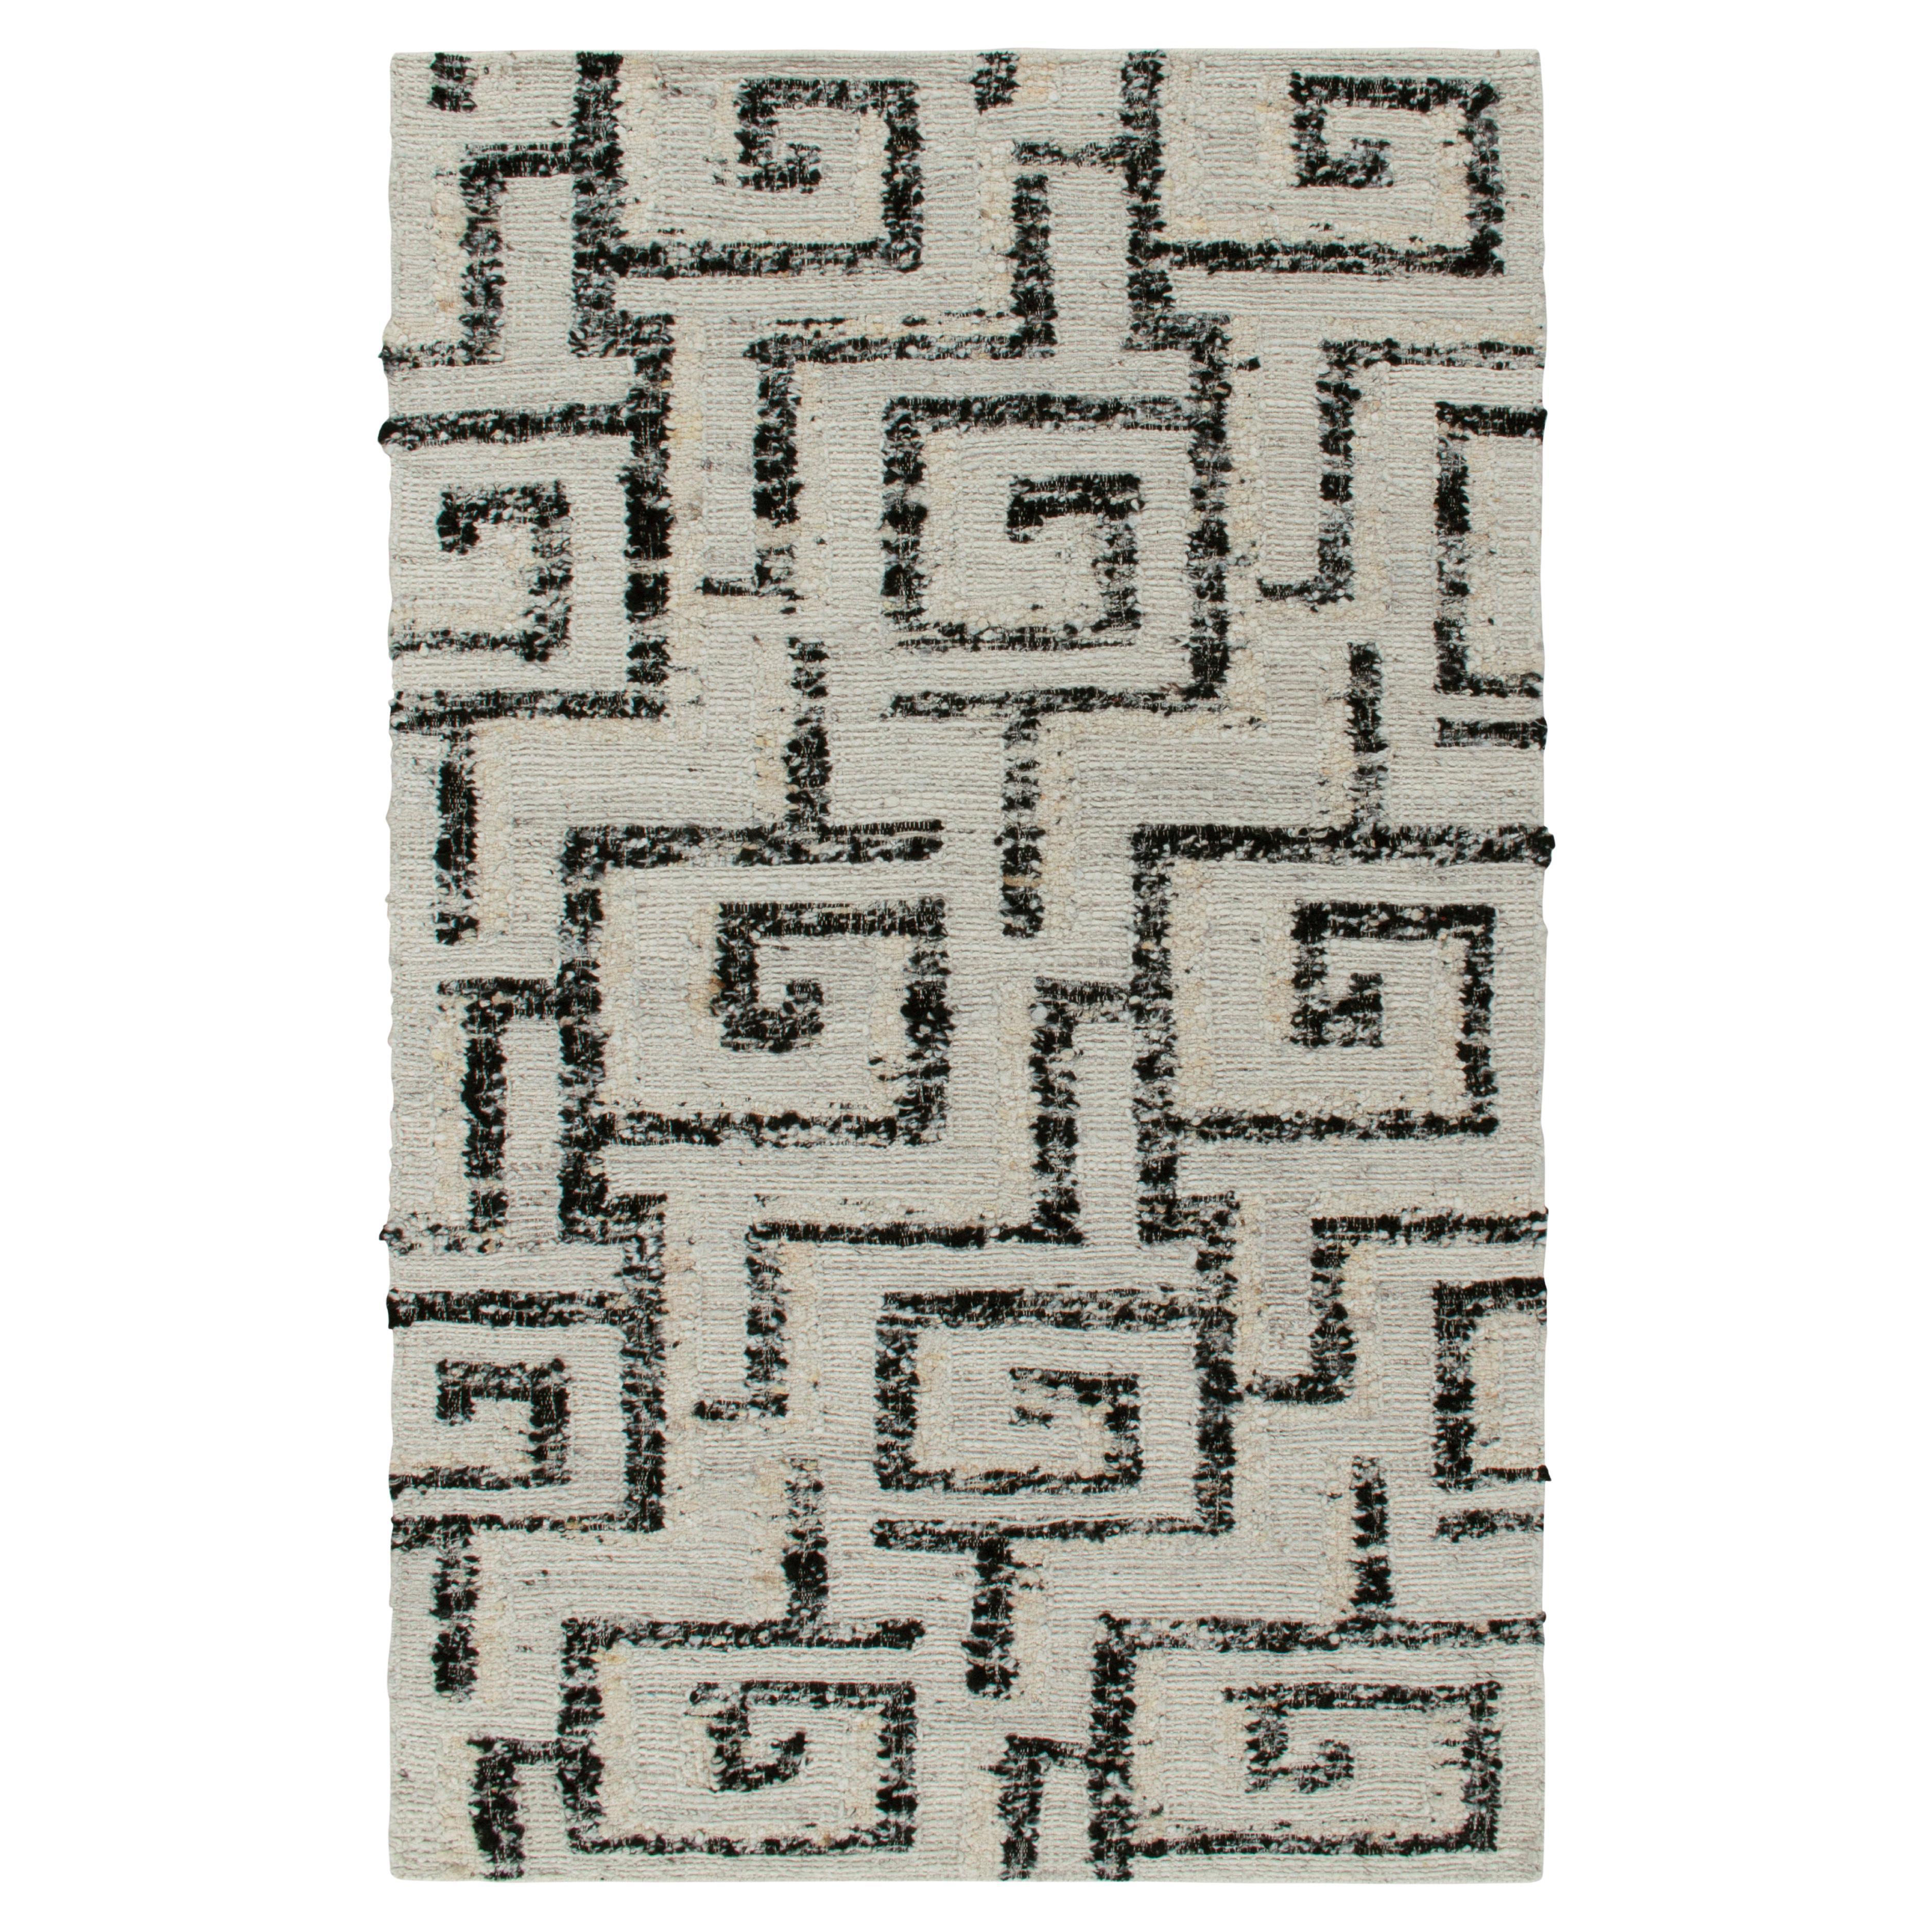 Zeitgenössischer Teppich und Kelim-Teppich in Elfenbein, Anthrazit und Schwarz mit Deko-Muster